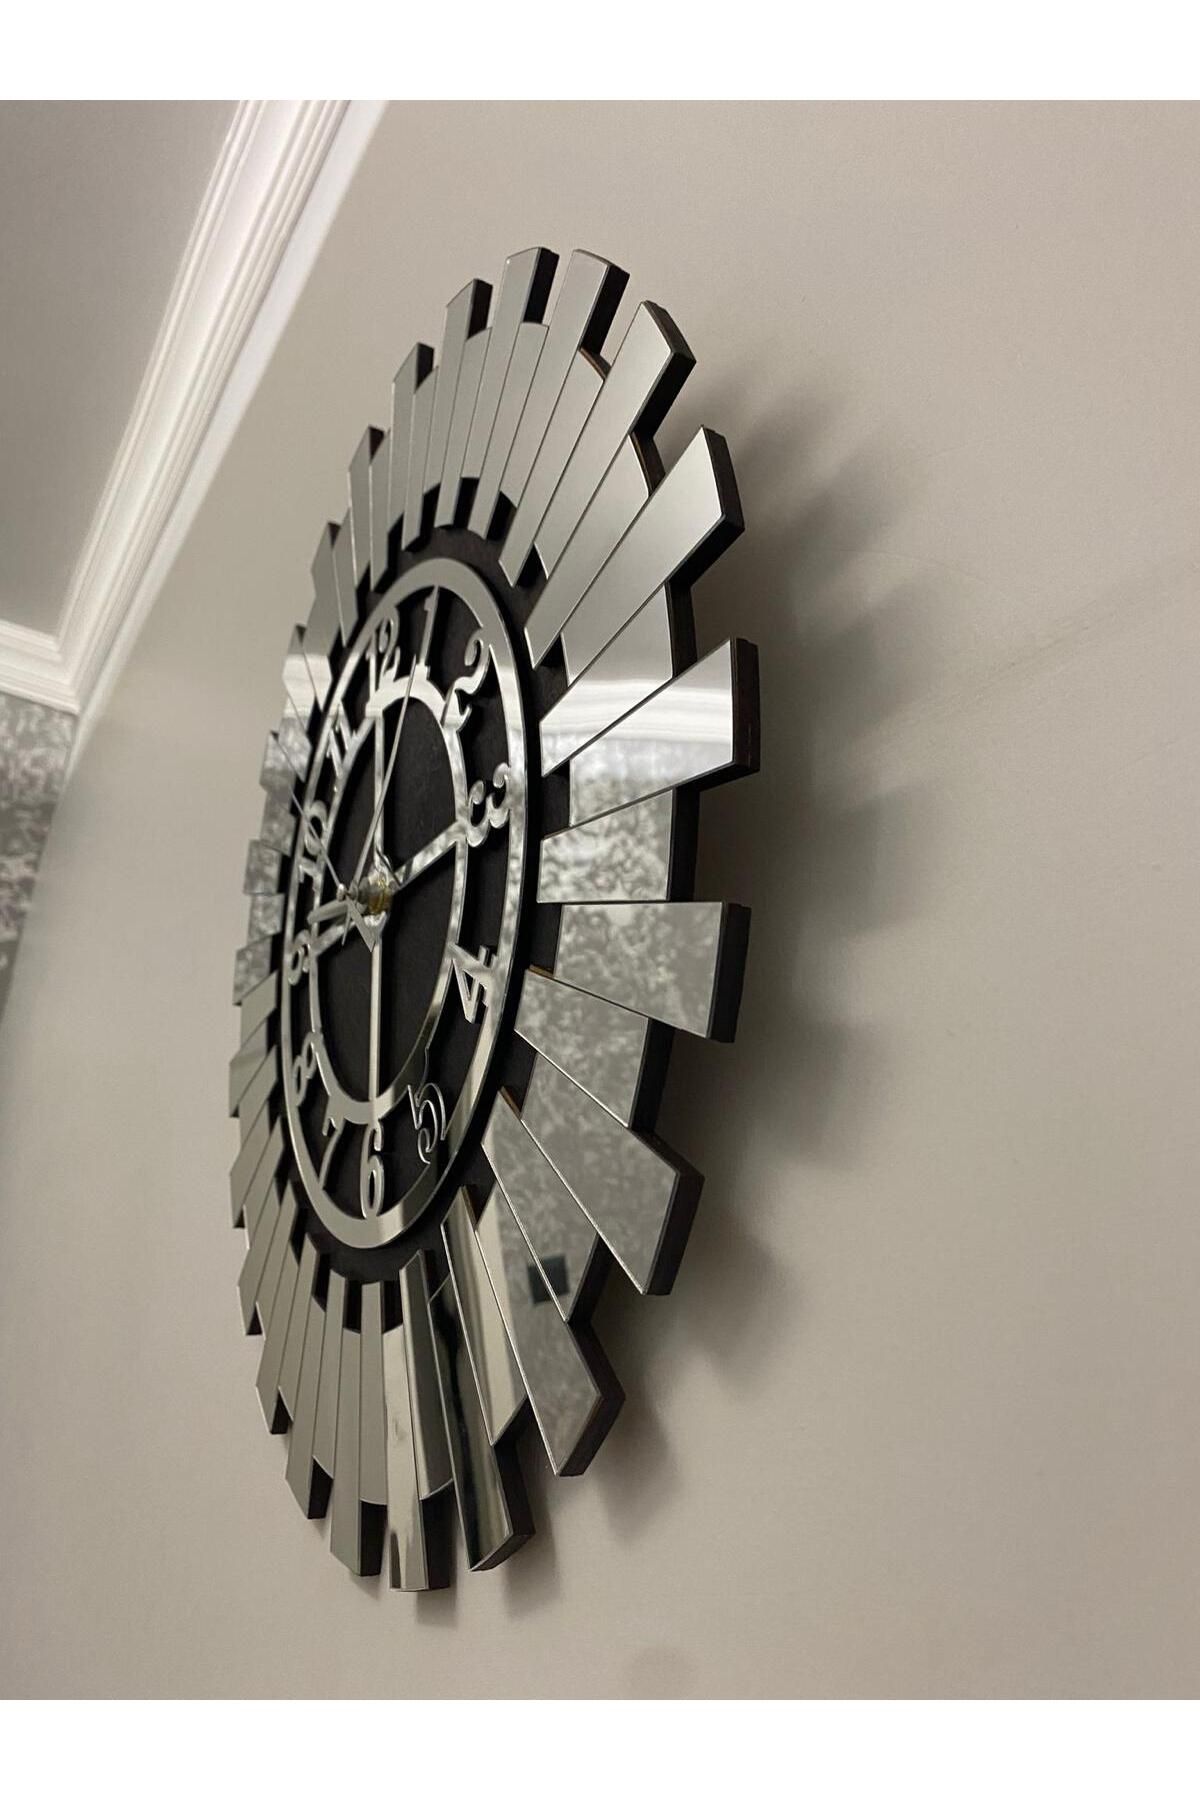 Tuba Design Gümüş Asil Dekoratif Duvar Saati Türkçe Rakamlı Çift Kat Siyah Mdf Üzeri Gümüş Aynalı Pleksili Saat